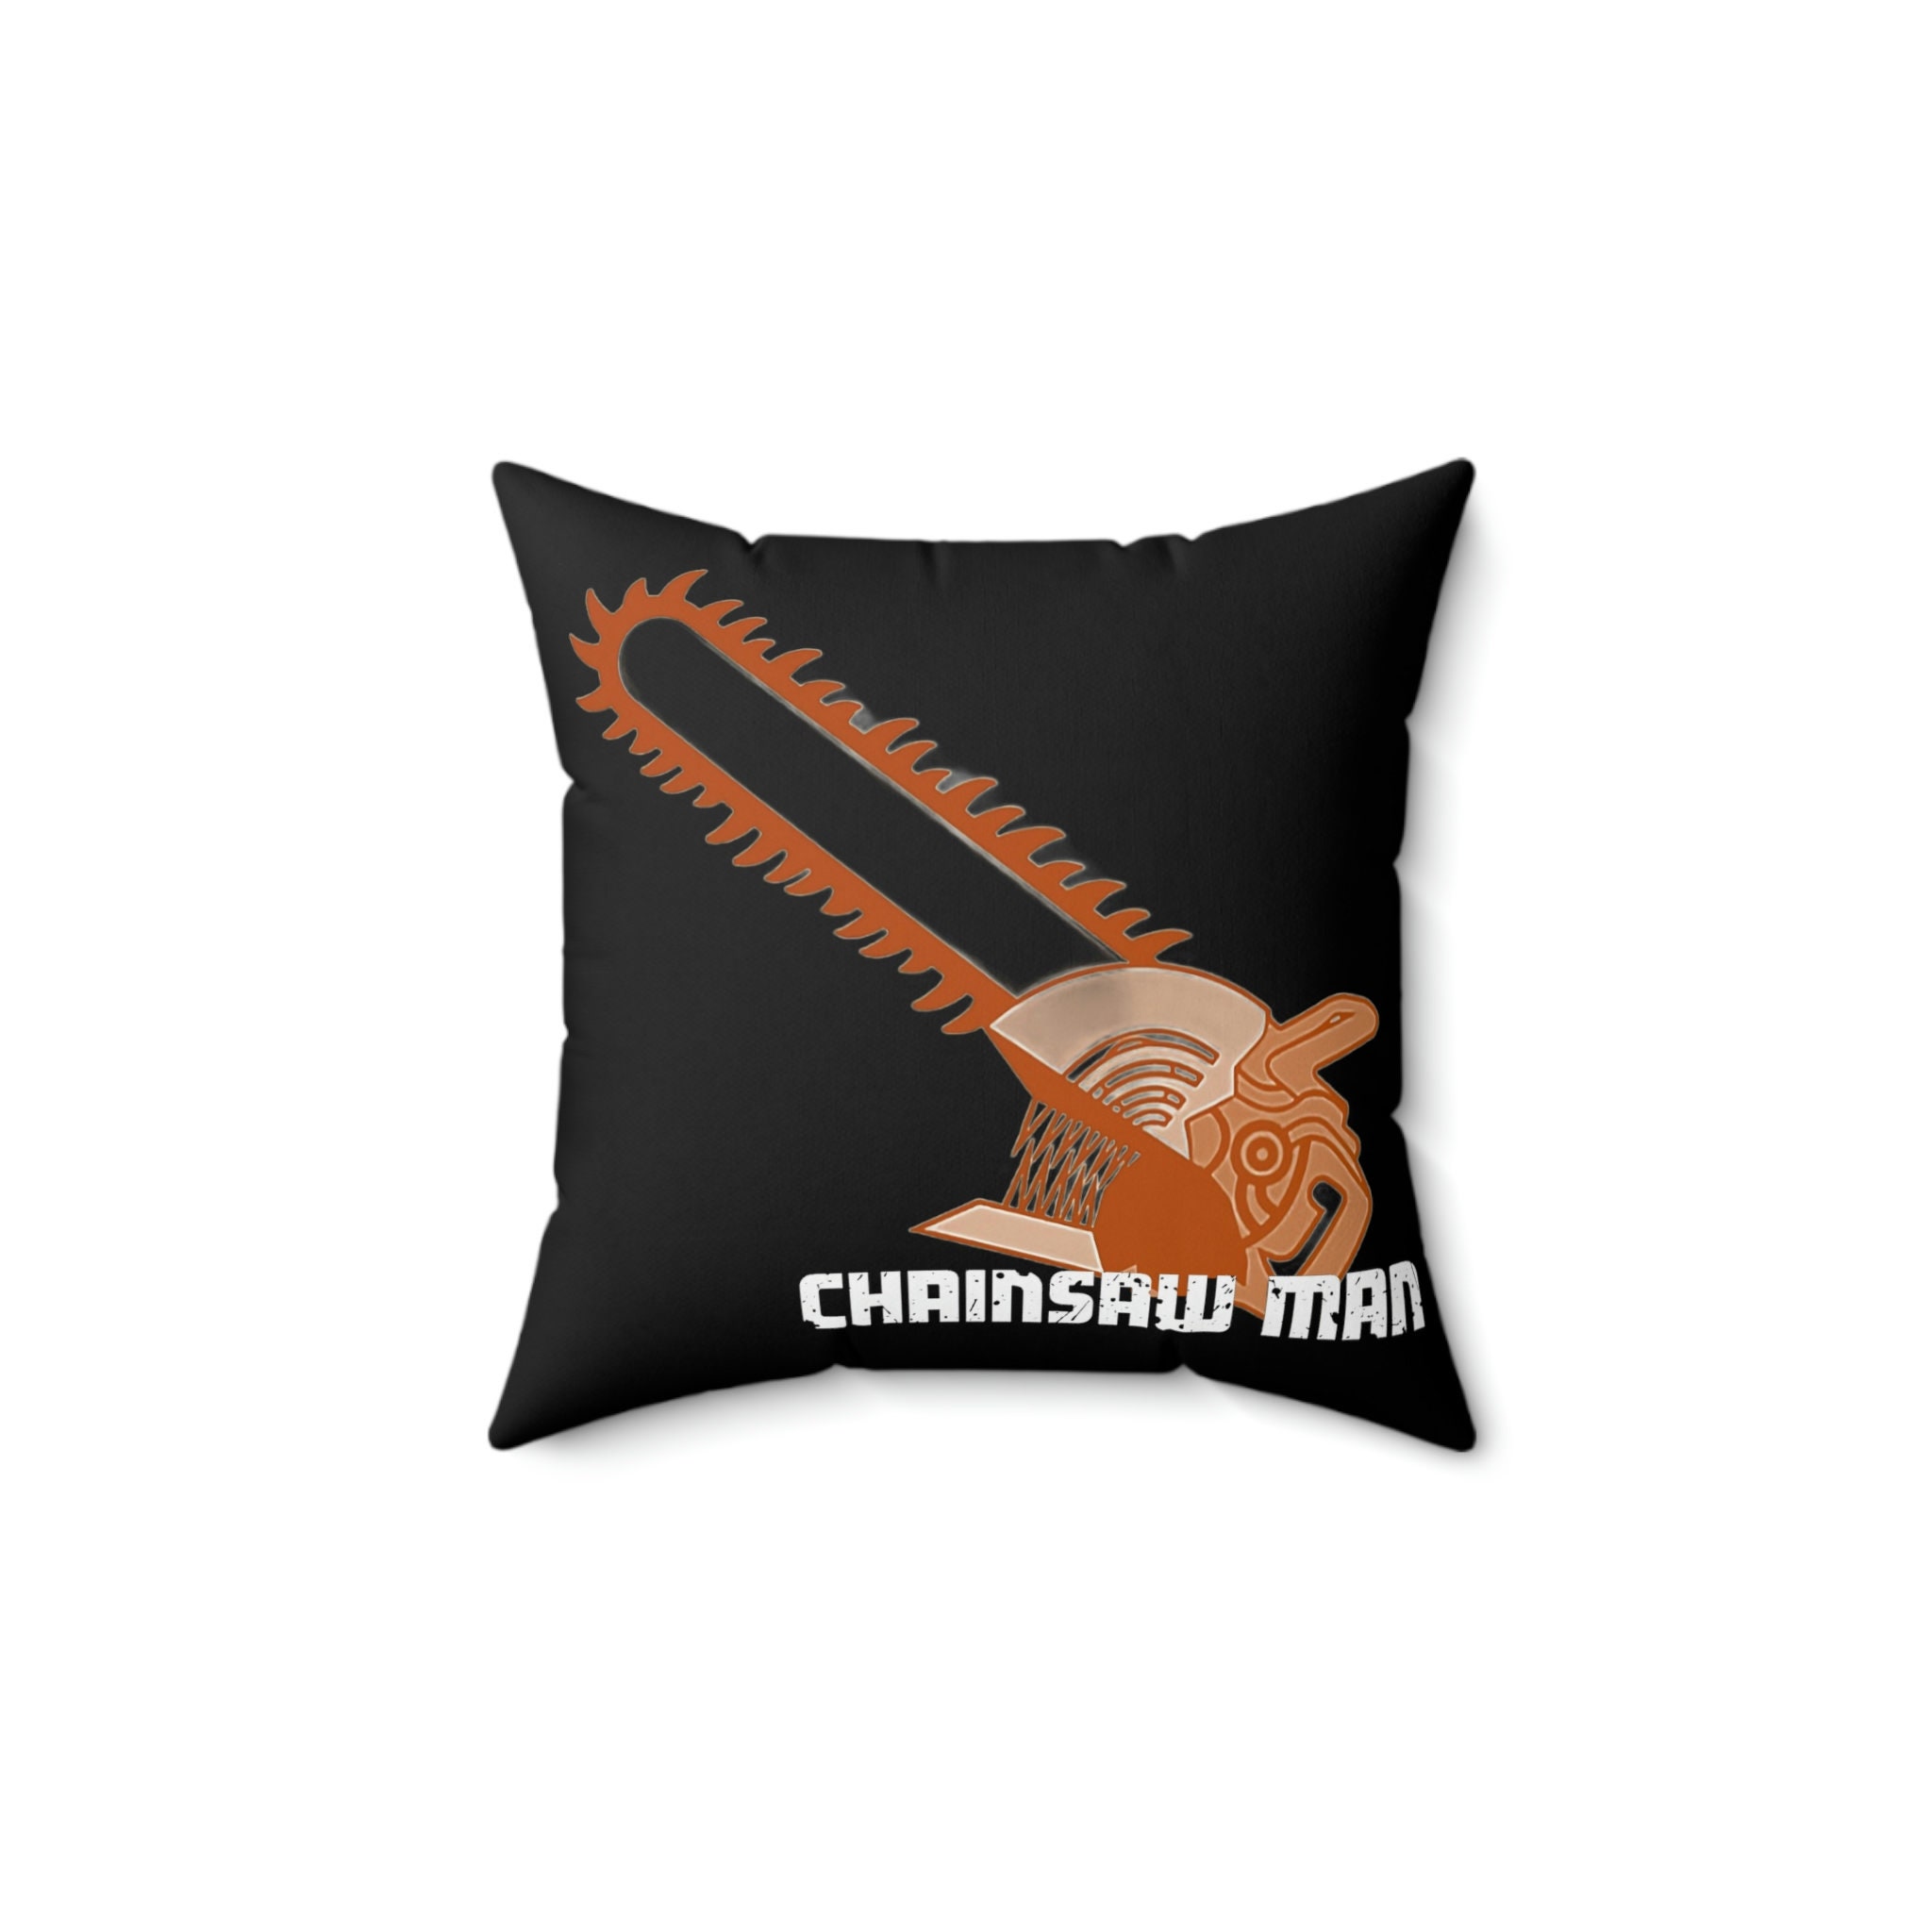 Chainsaw Man Pillows - Chainsaw Man Power Throw Pillow RB0908 - ®Chainsaw  Man Shop